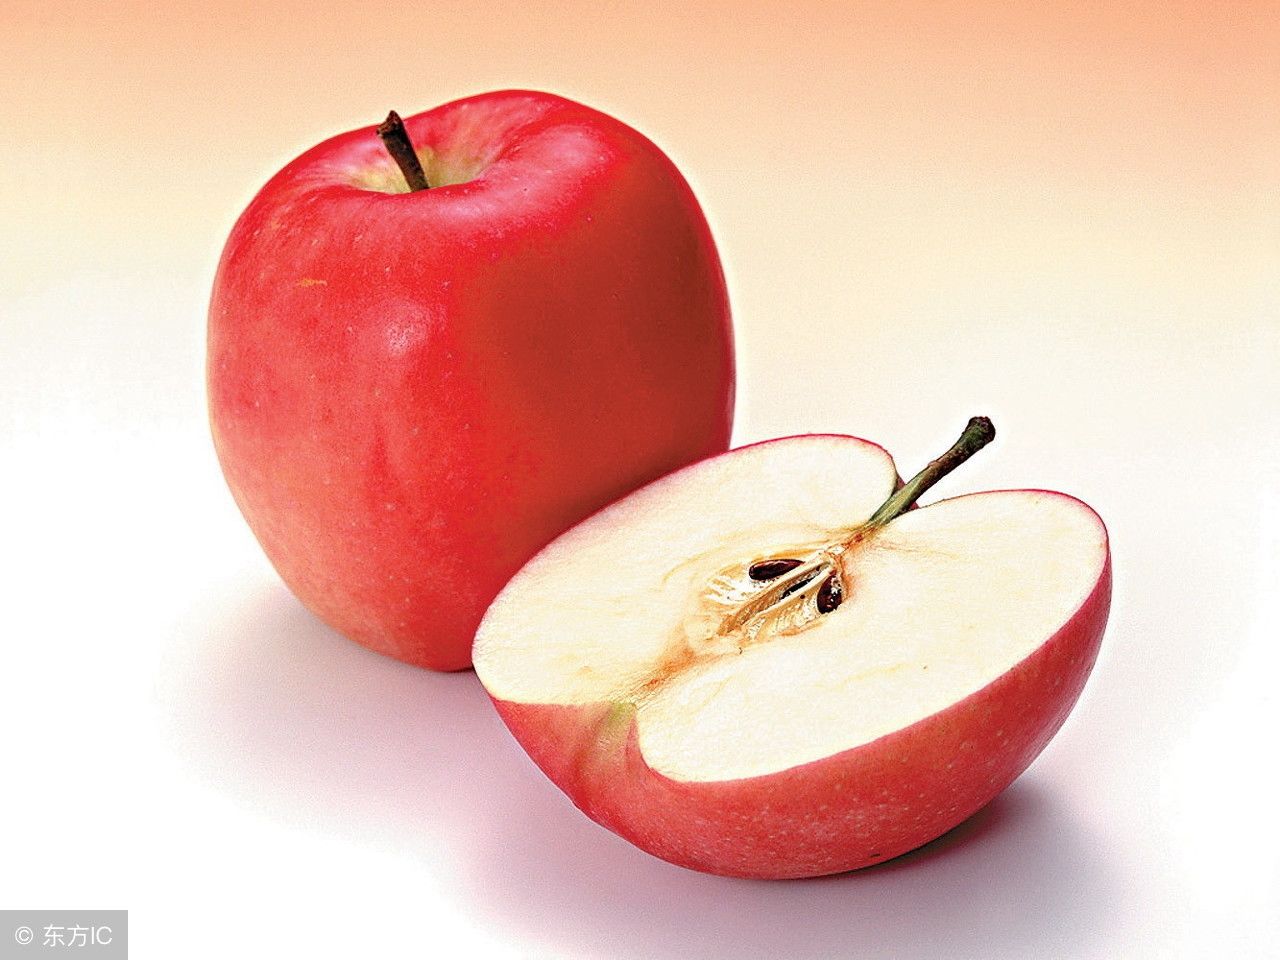 苹果有什么营养?经常吃苹果对身体有什么样的